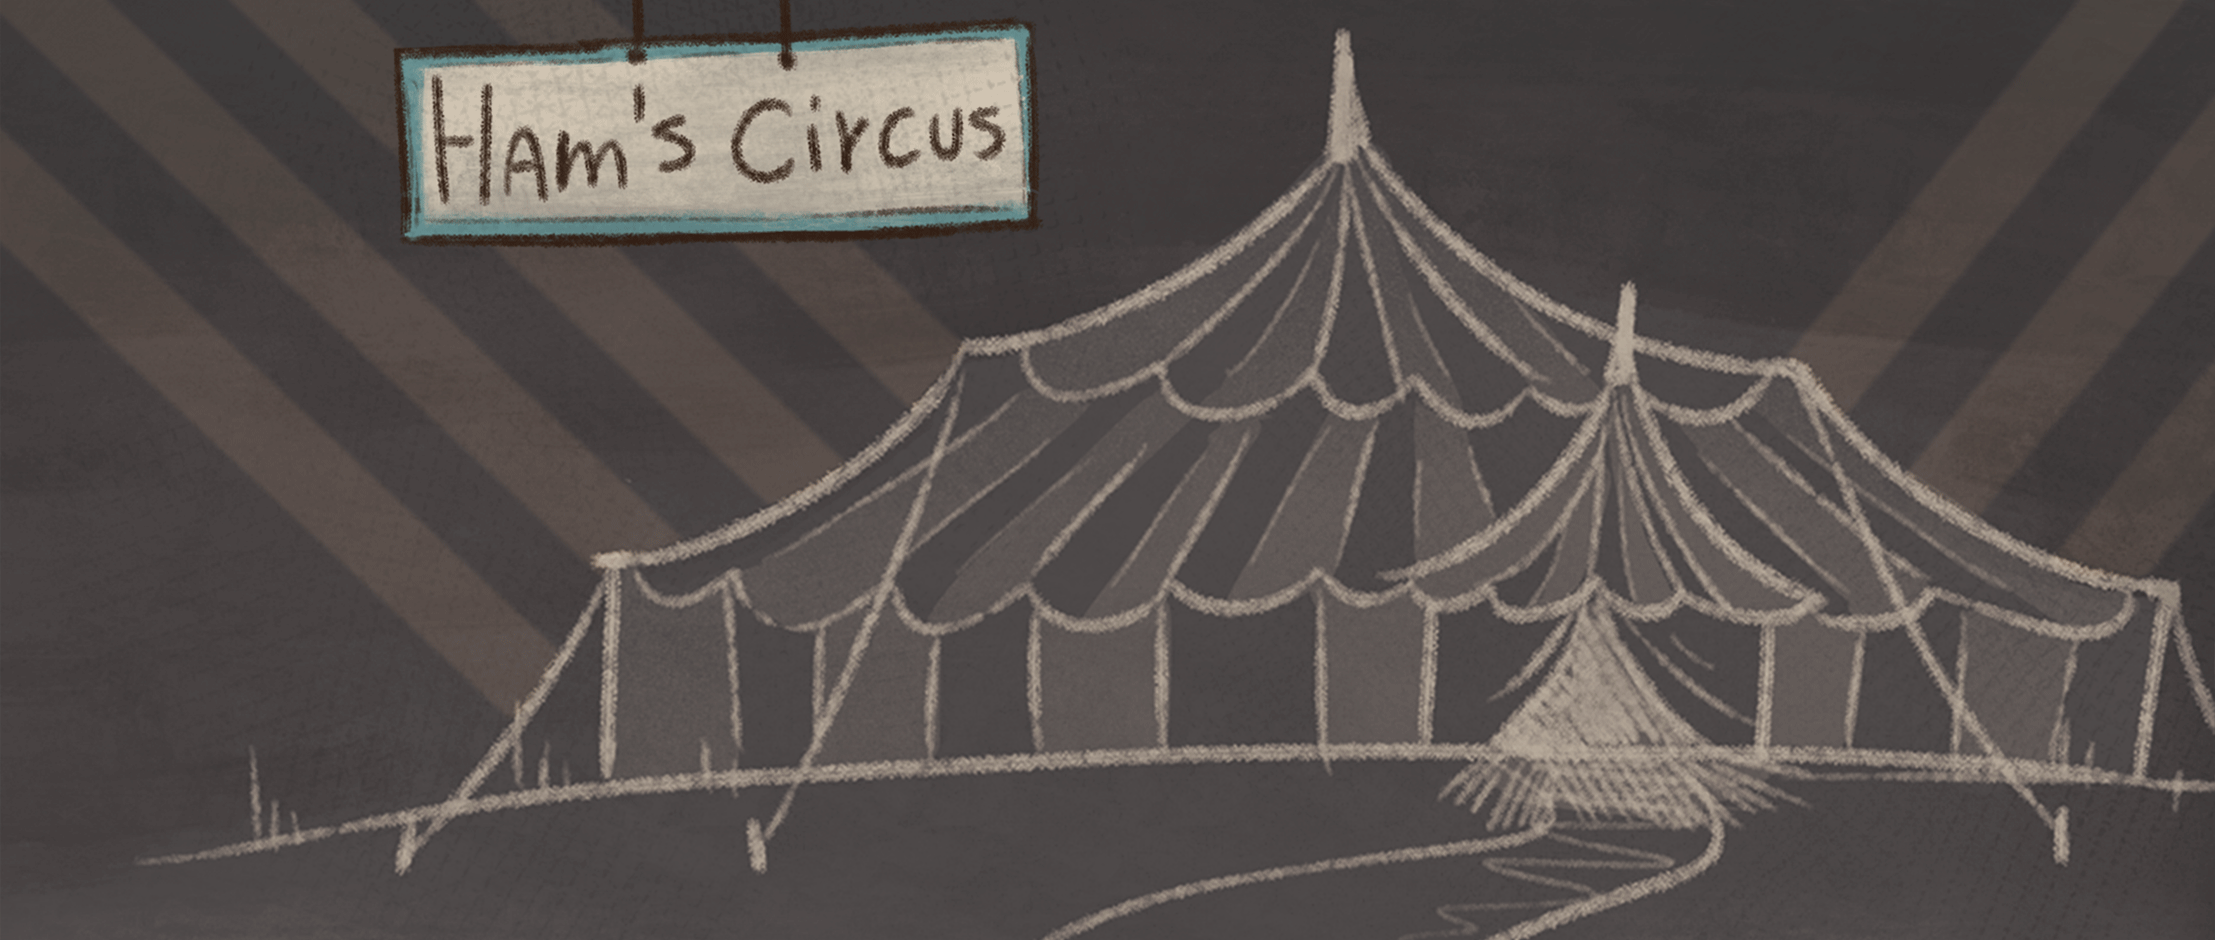 Ham's Circus